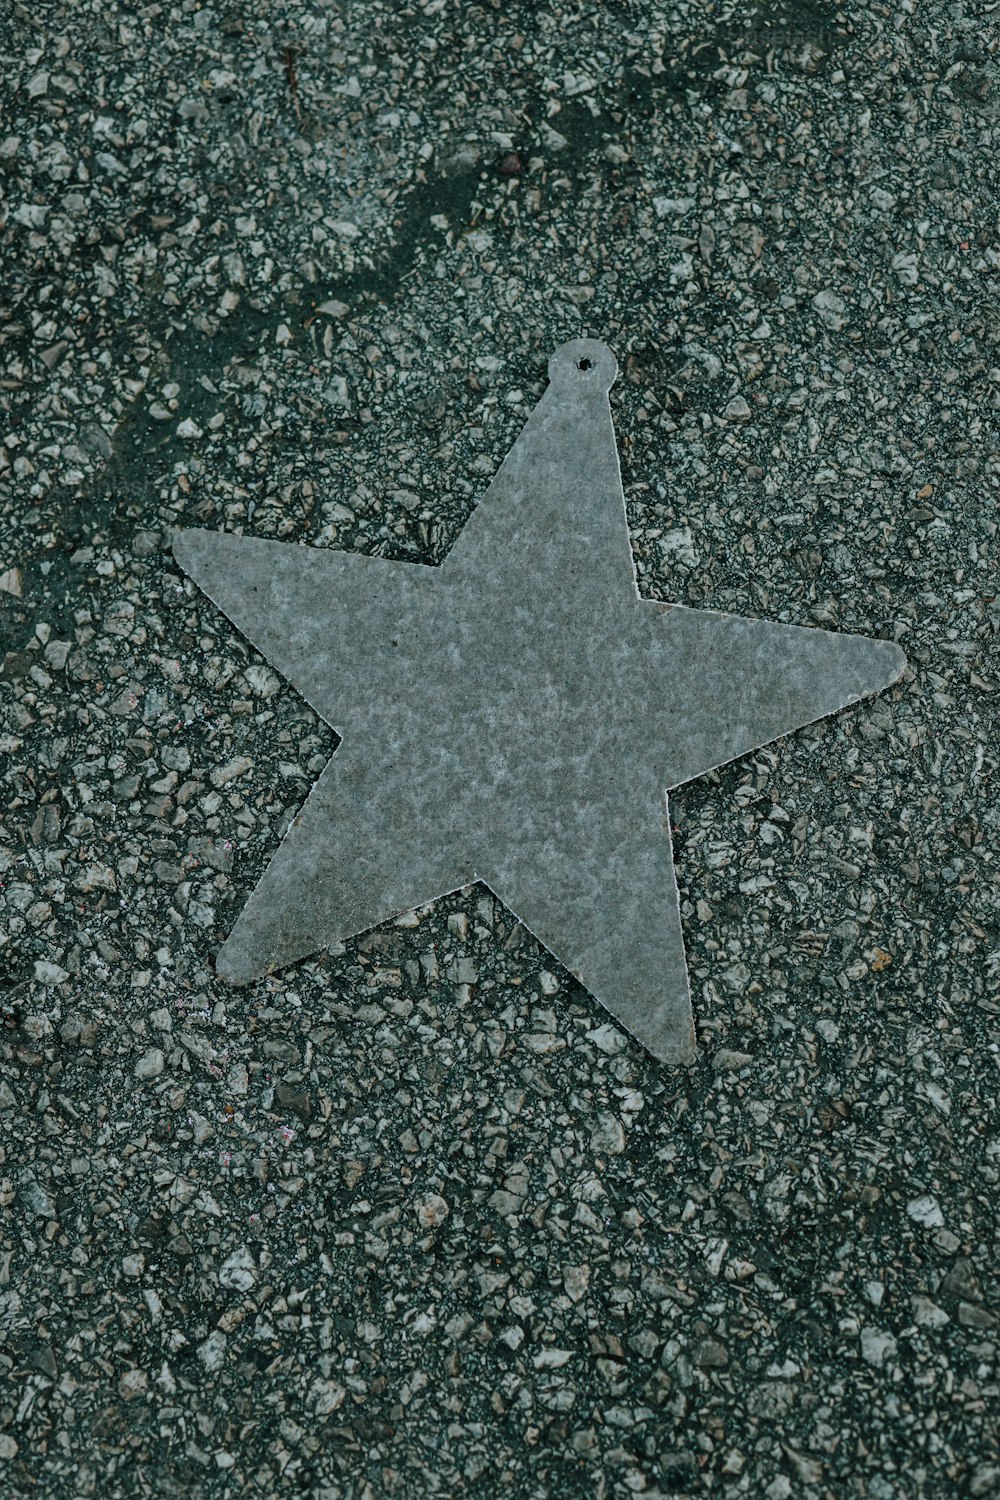 Ein Stern auf dem Boden mit Kies drumherum